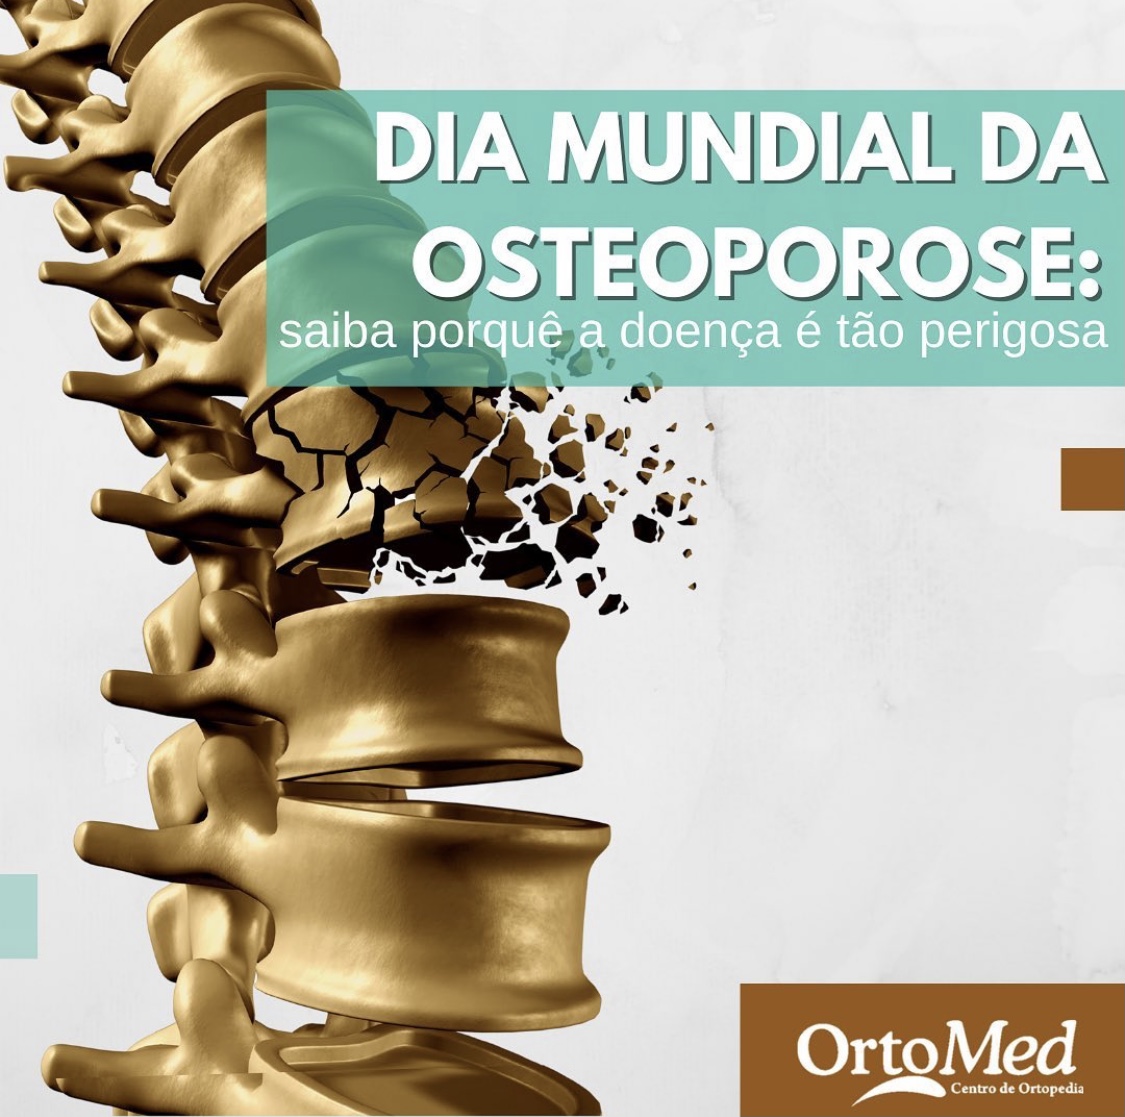 Osteoporose já atinge 10 milhões de brasileiros